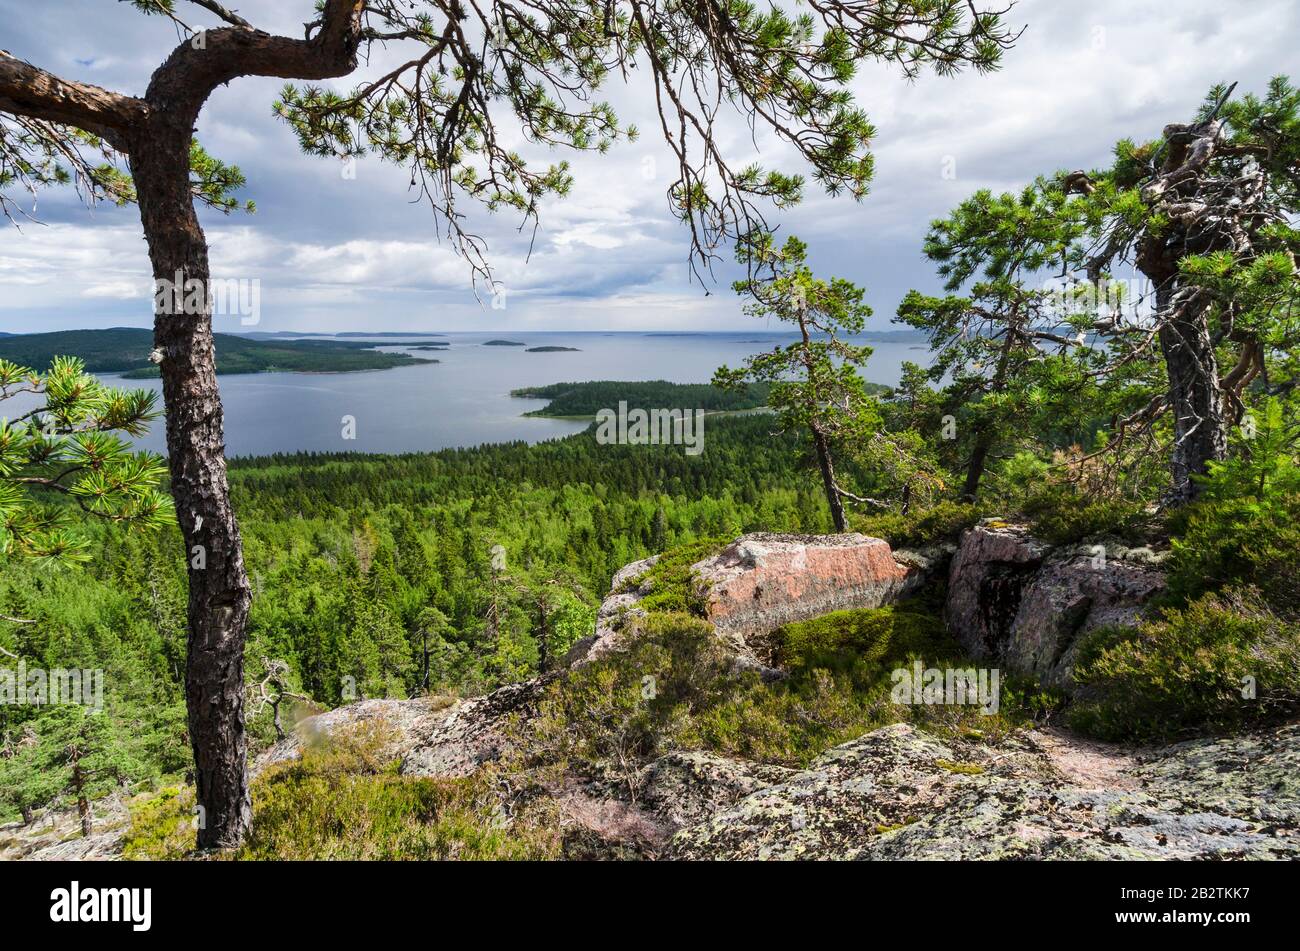 Am Bottnischen Meerbusen Landschaft im Nationalpark Skuleskogen, Weltnaturerbe Hoega Kusten, Vaesternorrland, Schweden, Juli 2012 Banque D'Images